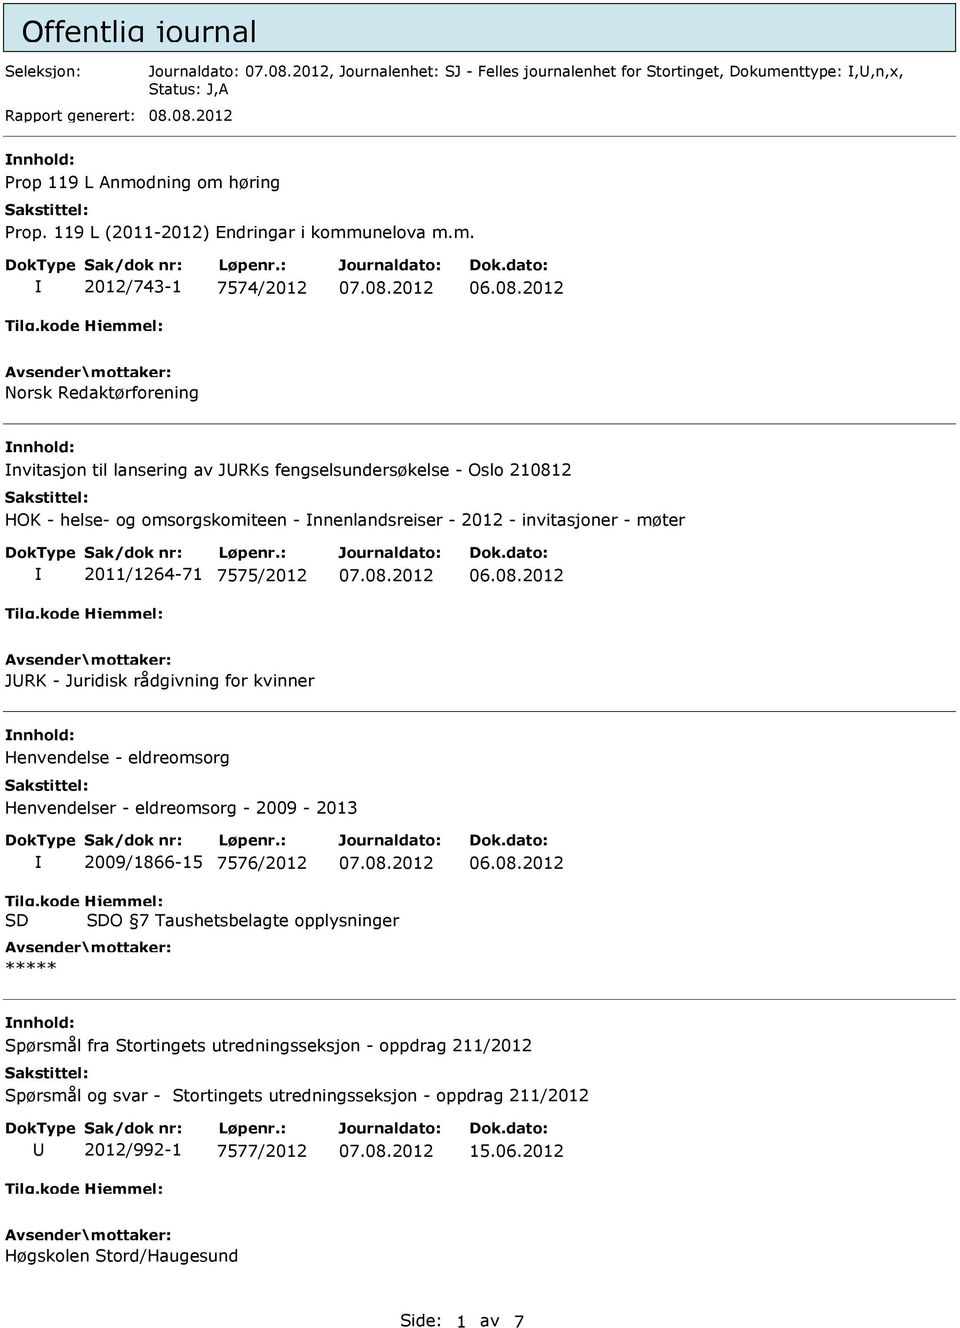 2012 Norsk Redaktørforening nvitasjon til lansering av JRKs fengselsundersøkelse - Oslo 210812 HOK - helse- og omsorgskomiteen - nnenlandsreiser - 2012 - invitasjoner - møter 2011/1264-71 7575/2012